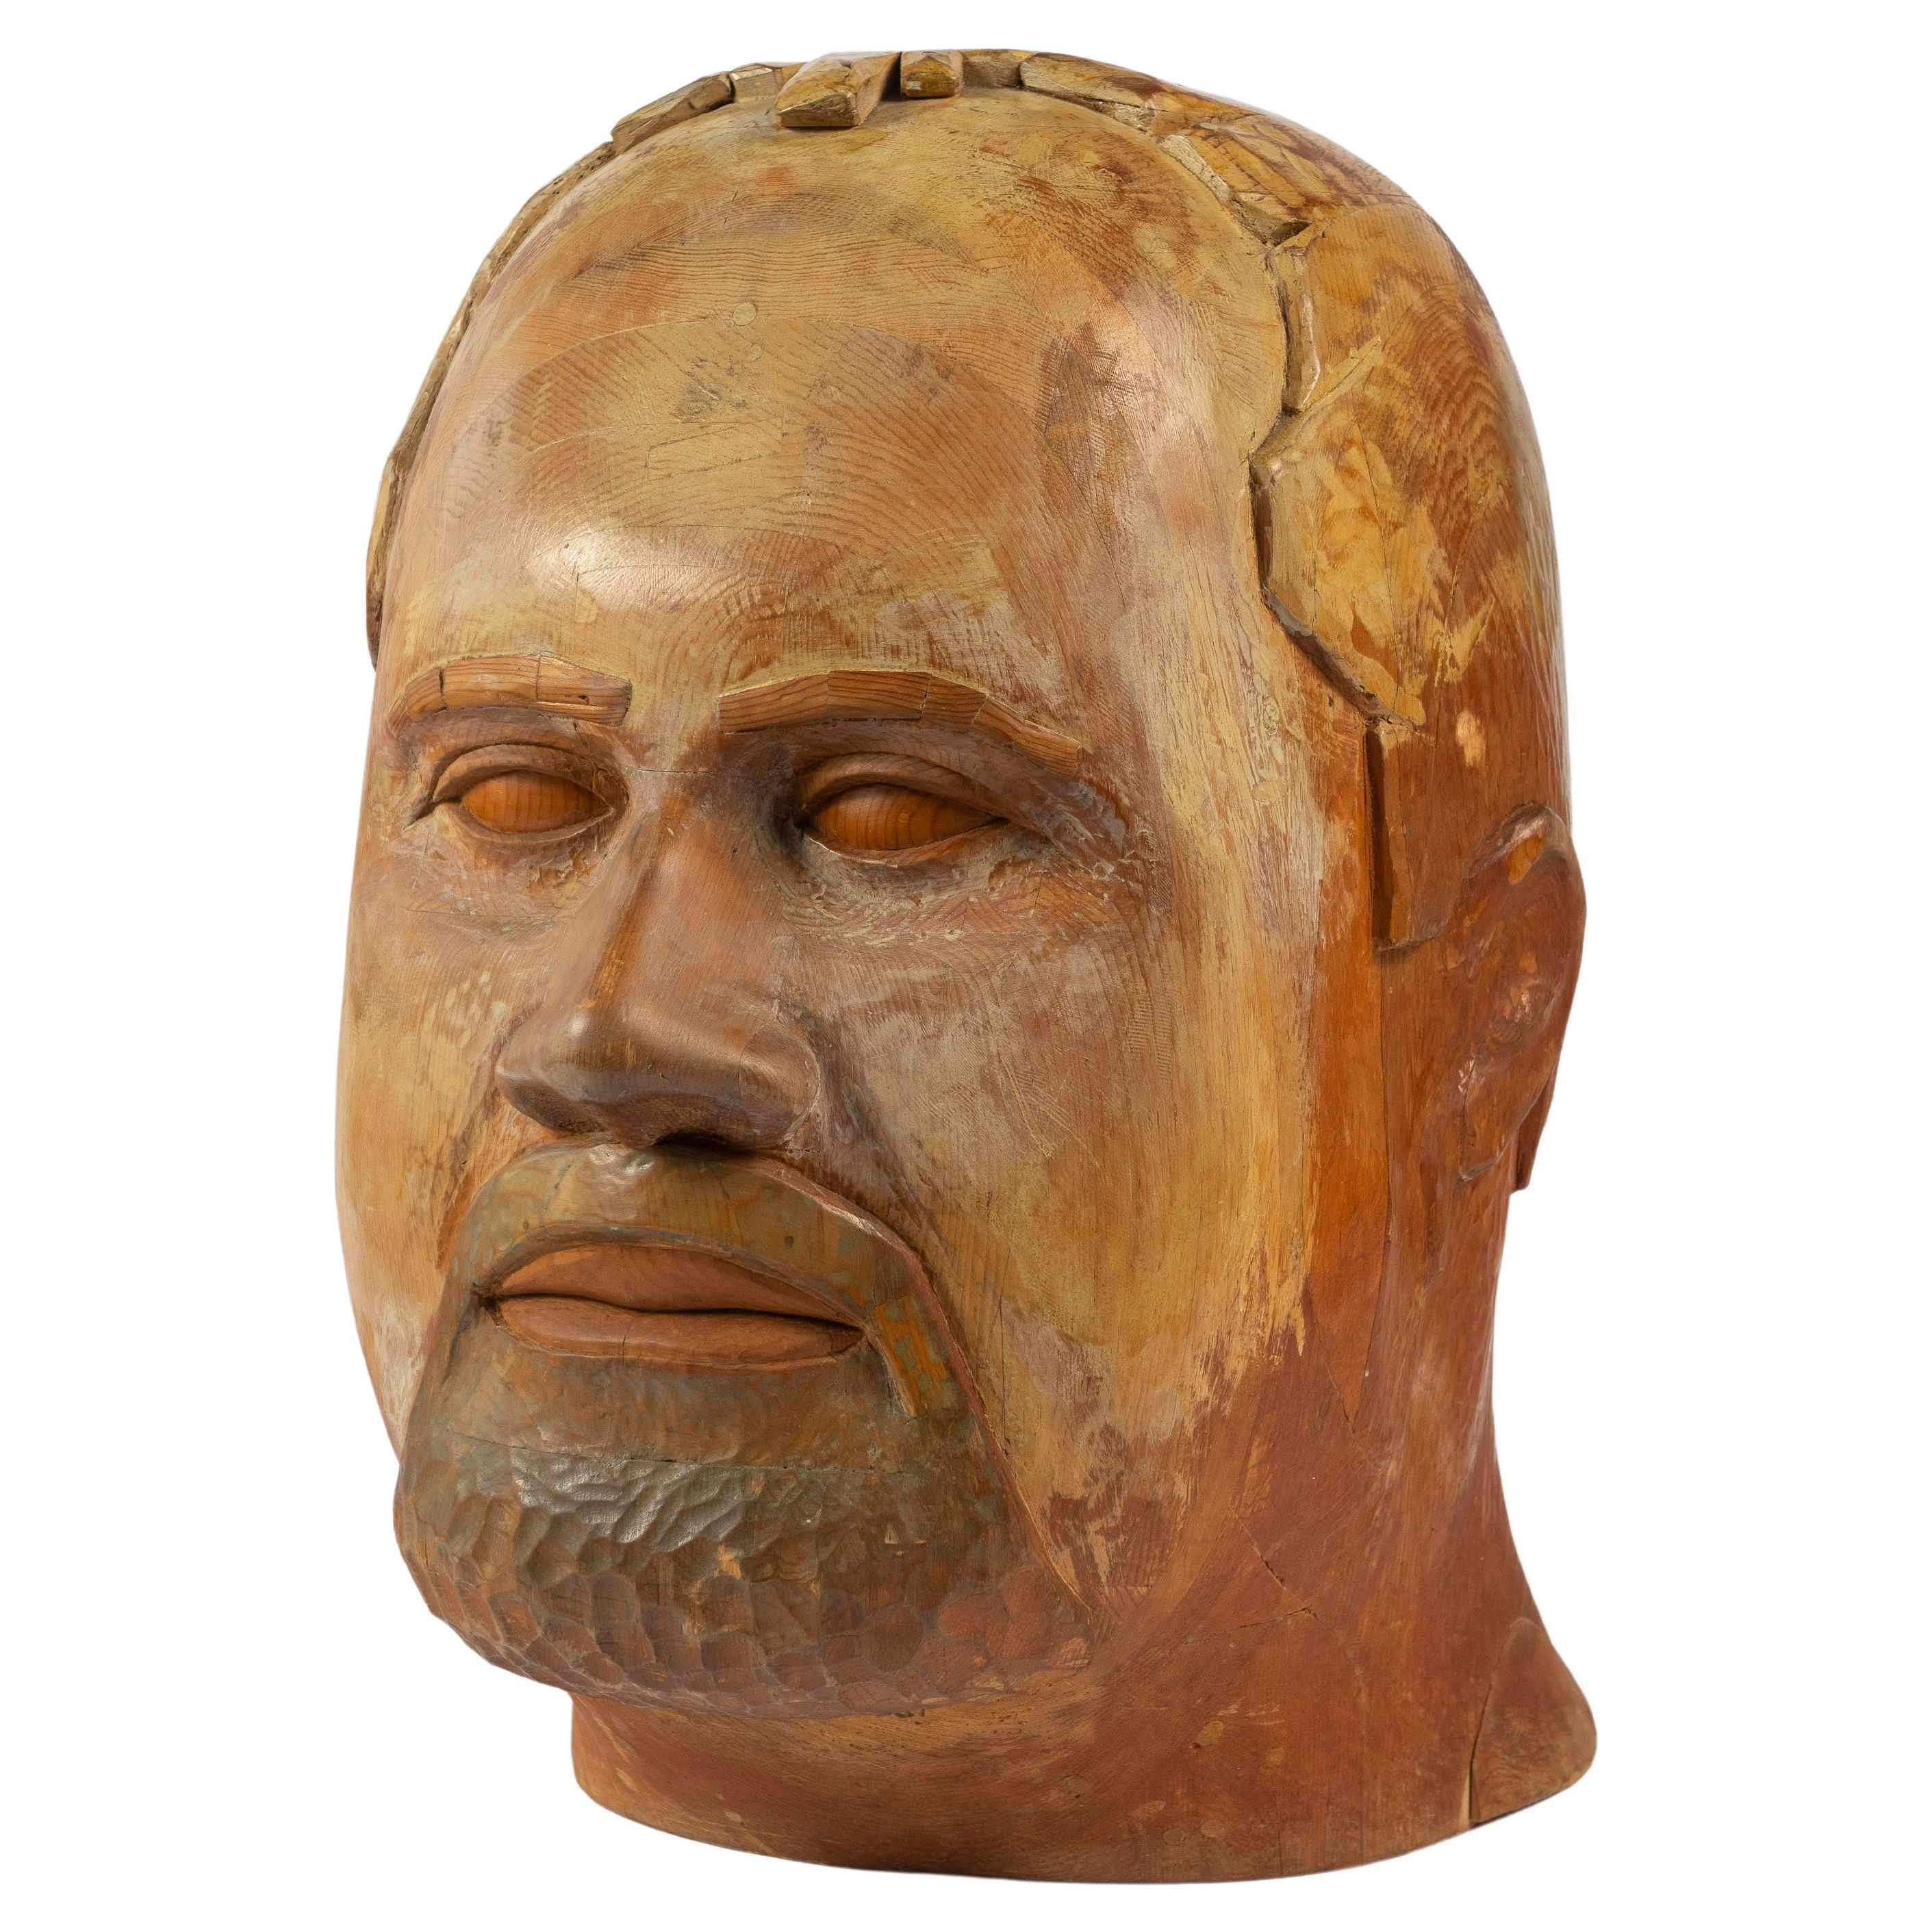 Grande sculpture d'art populaire sculptée à la main représentant une tête d'homme